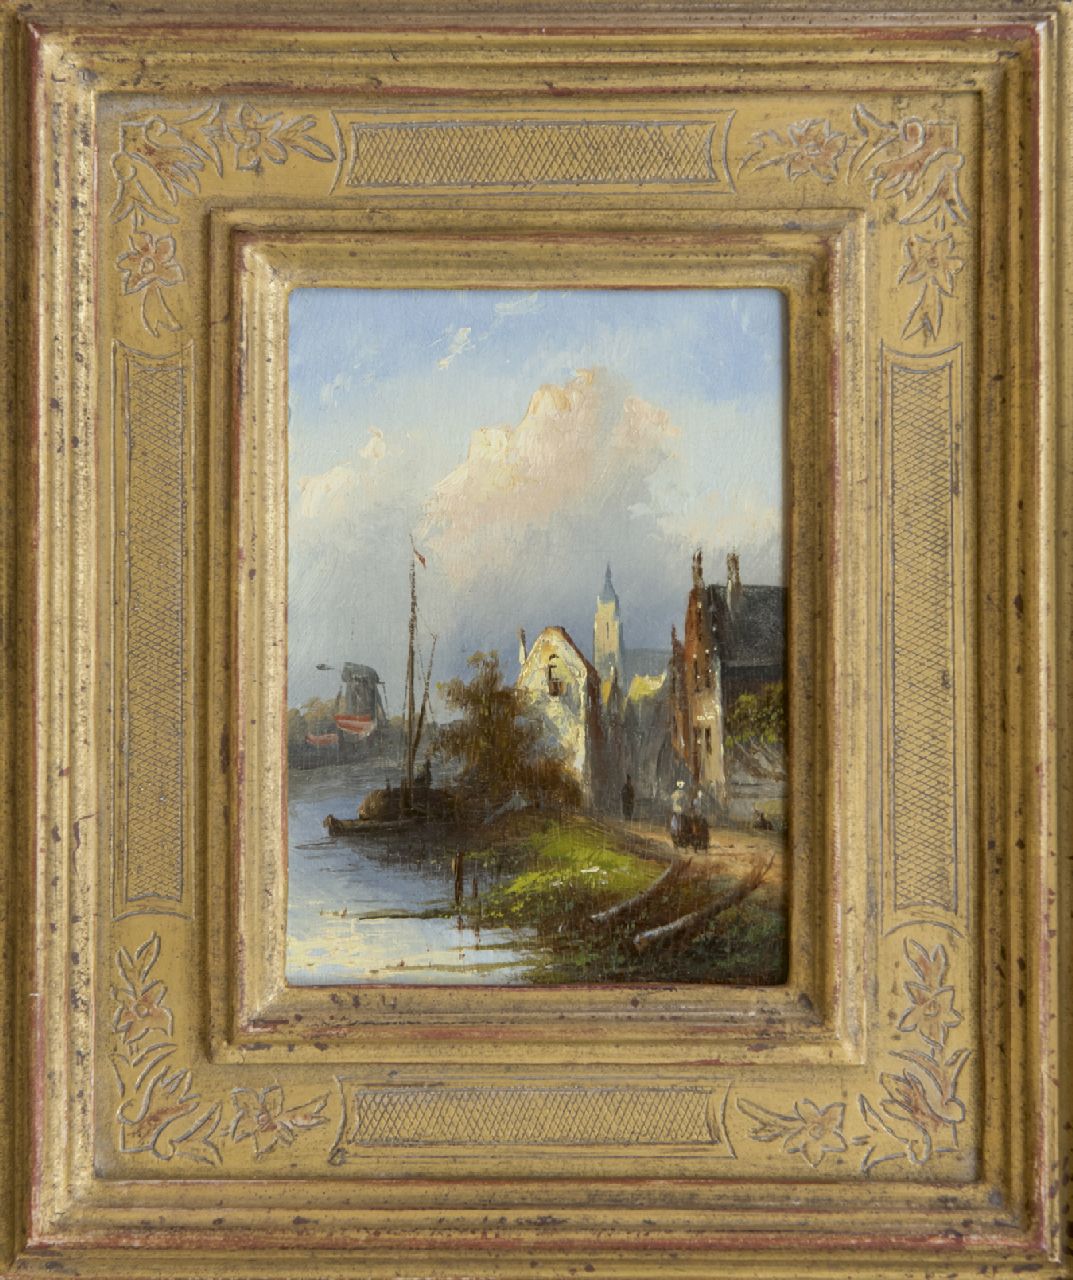 Spohler J.J.C.  | Jacob Jan Coenraad Spohler, Hollands rivierlandschap met huizen, olieverf op paneel 12,1 x 8,8 cm, gesigneerd verso